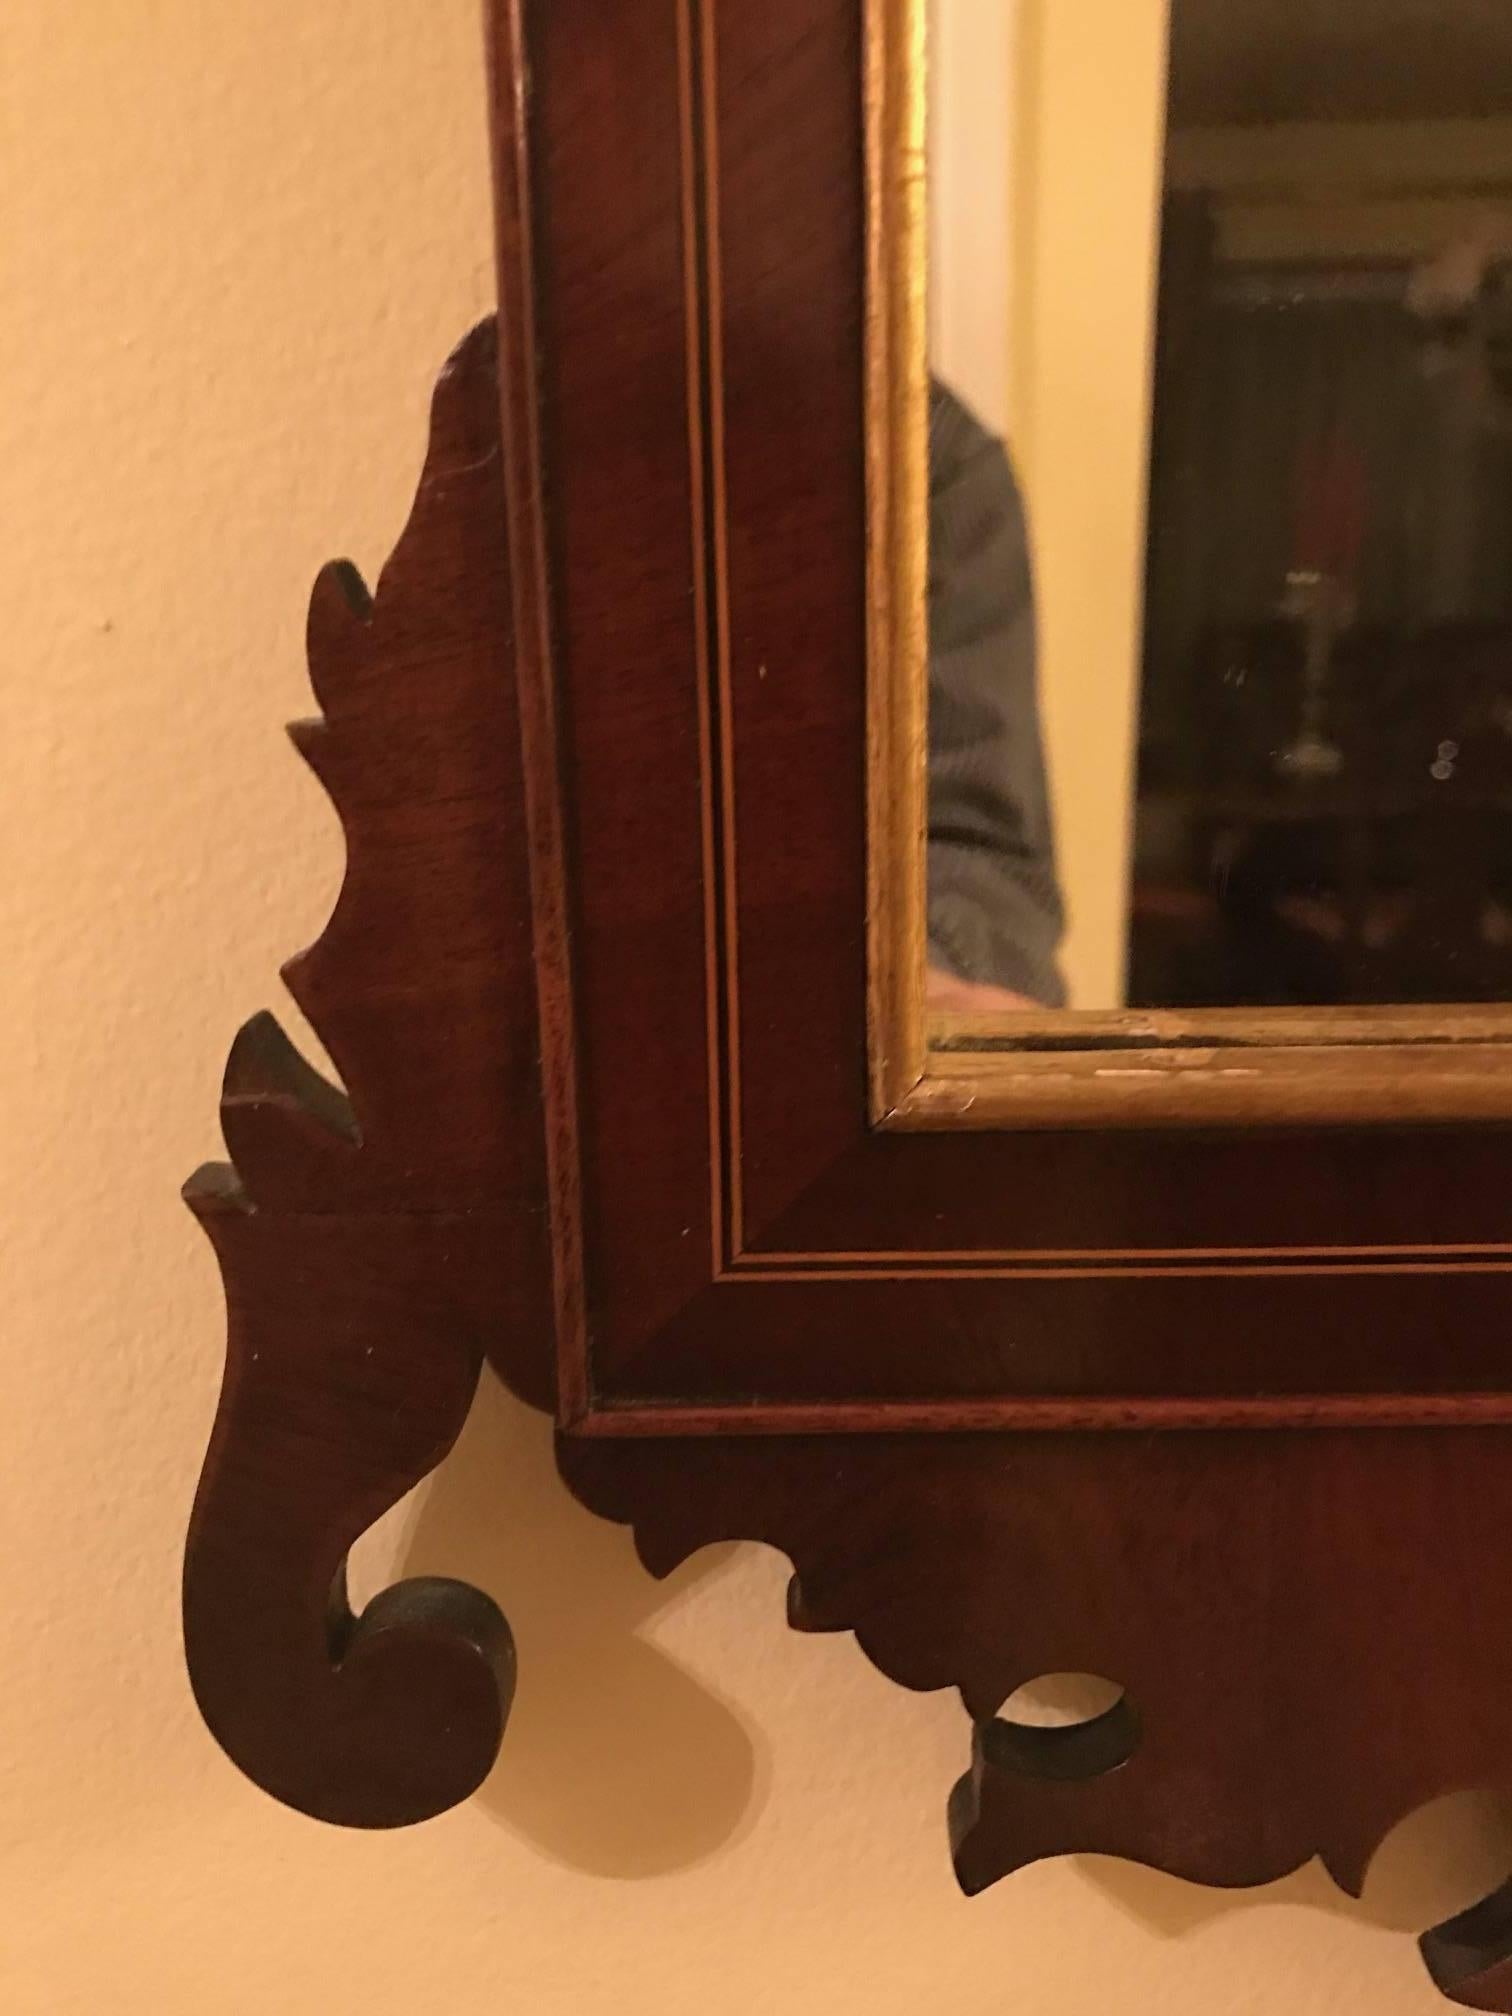 Elégant miroir en acajou de style Chippendale du 19e siècle. Le fronton en col de cygne doré est orné d'une rosette et d'un motif d'urne, flanqué de délicates vignes dorées avec des branches. Le miroir est souligné par une incrustation de lignes de